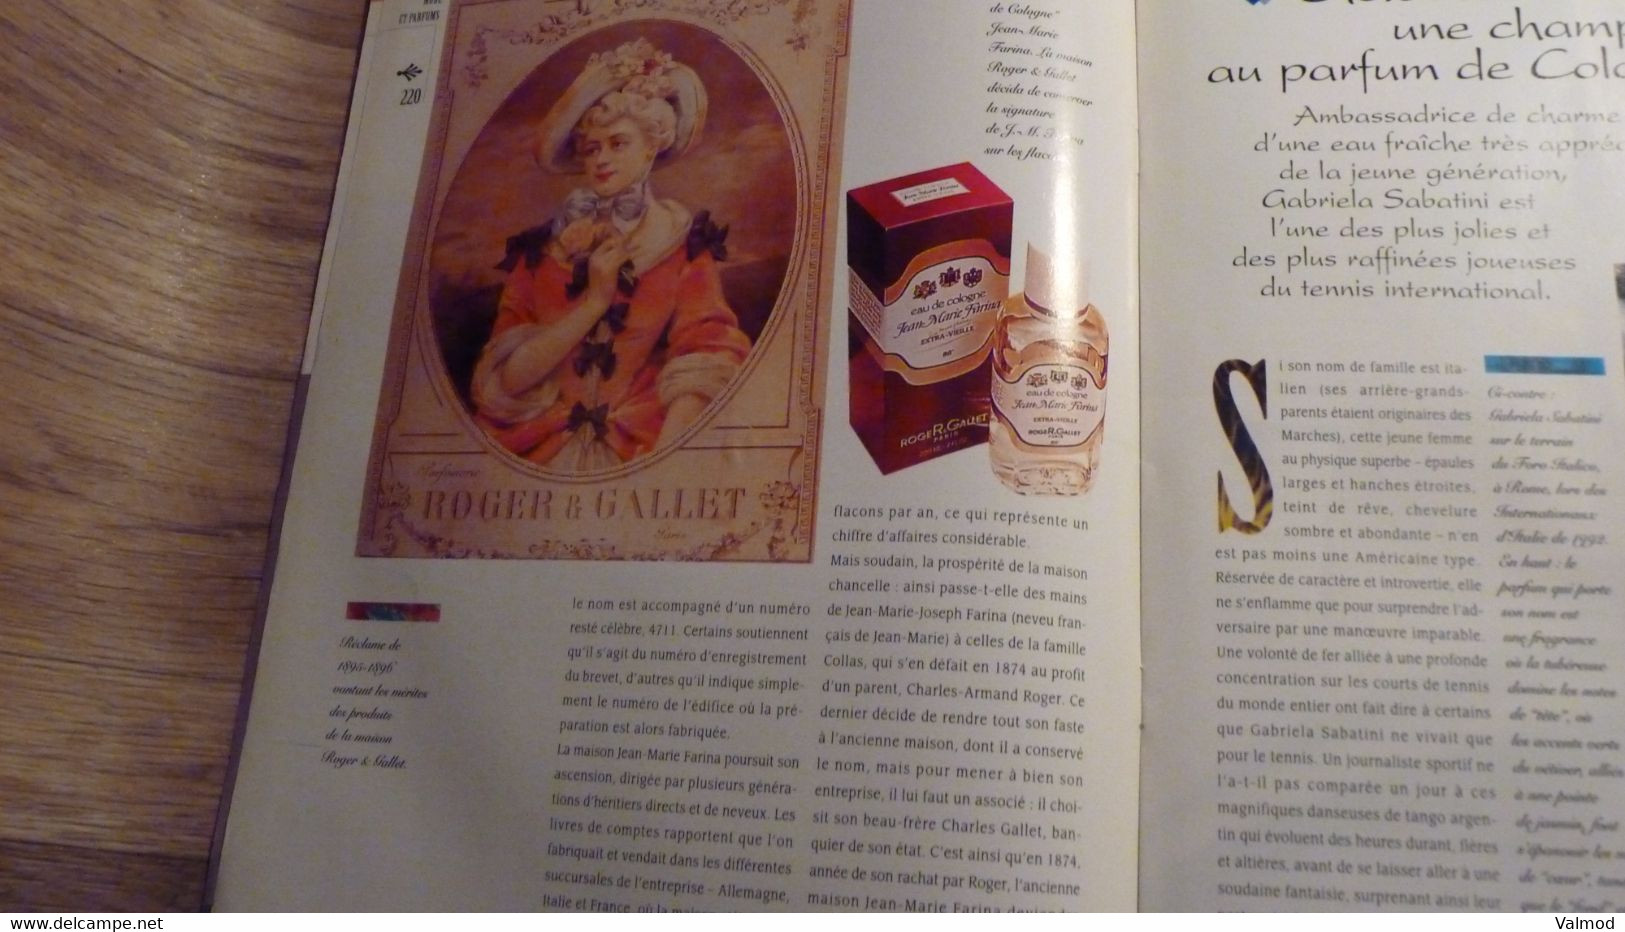 Magazine "Parfums De Rêve" N° 19 -  Azzaro - "Oh La La" - Editions Atlas - Tijdschriften